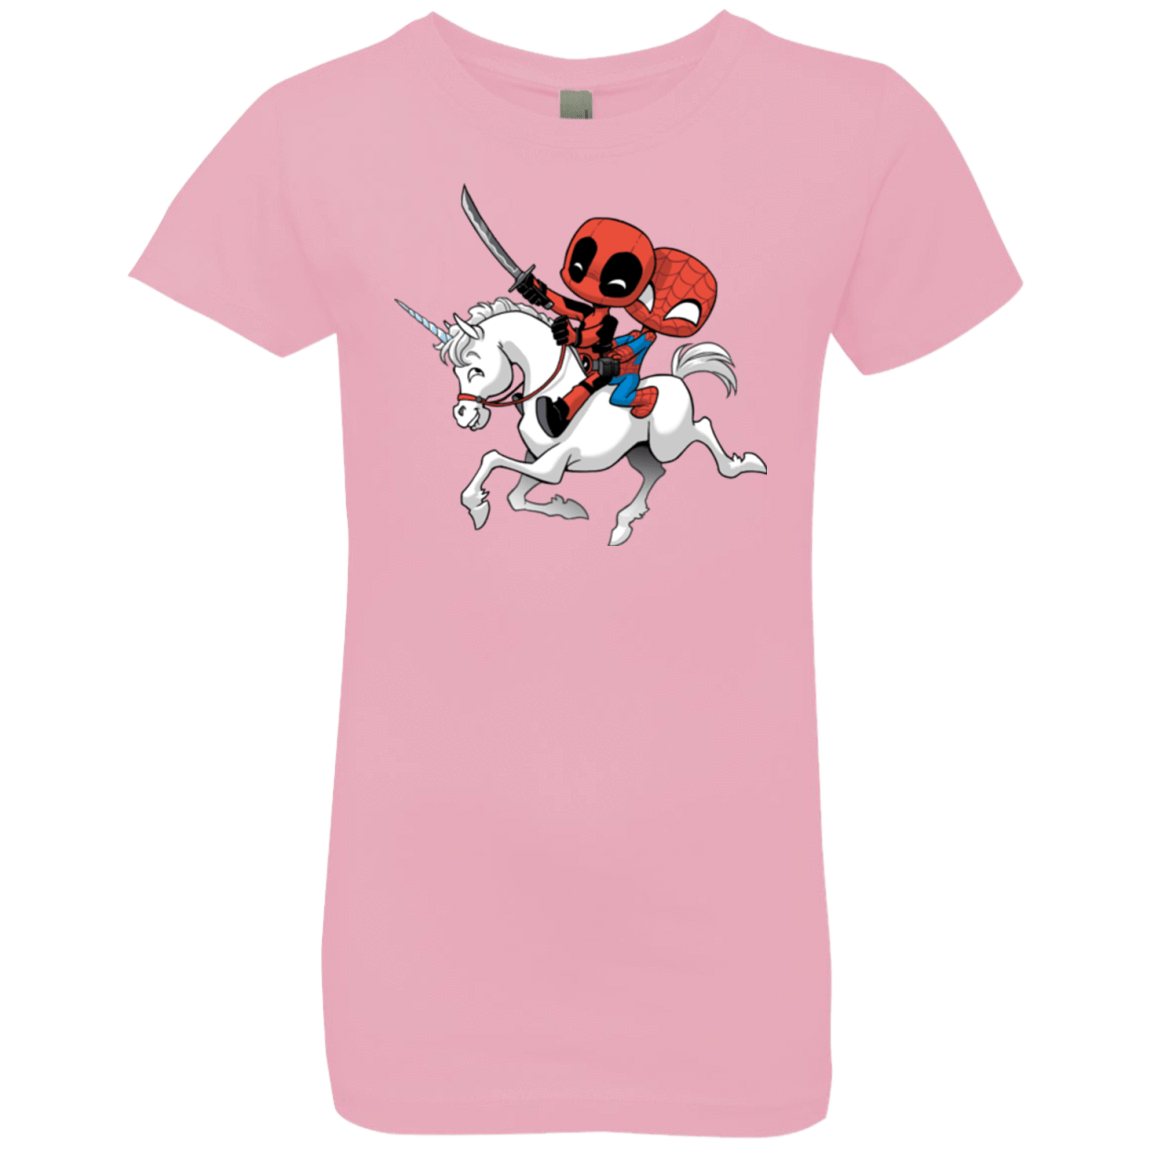 T-Shirts Light Pink / YXS Magical Friends Girls Premium T-Shirt